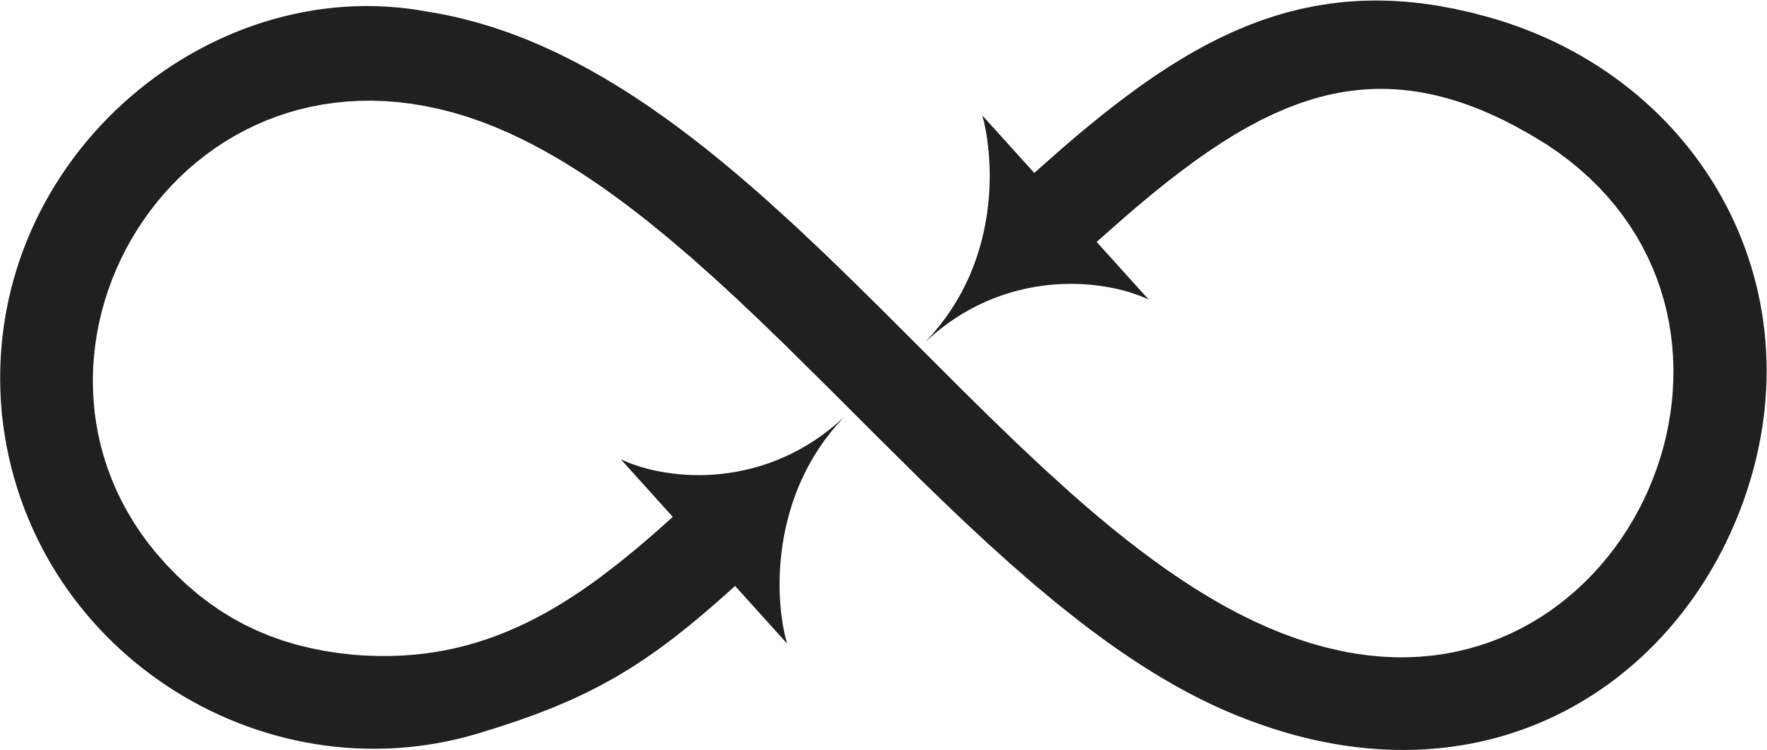 Black Infinity Symbol Arrows